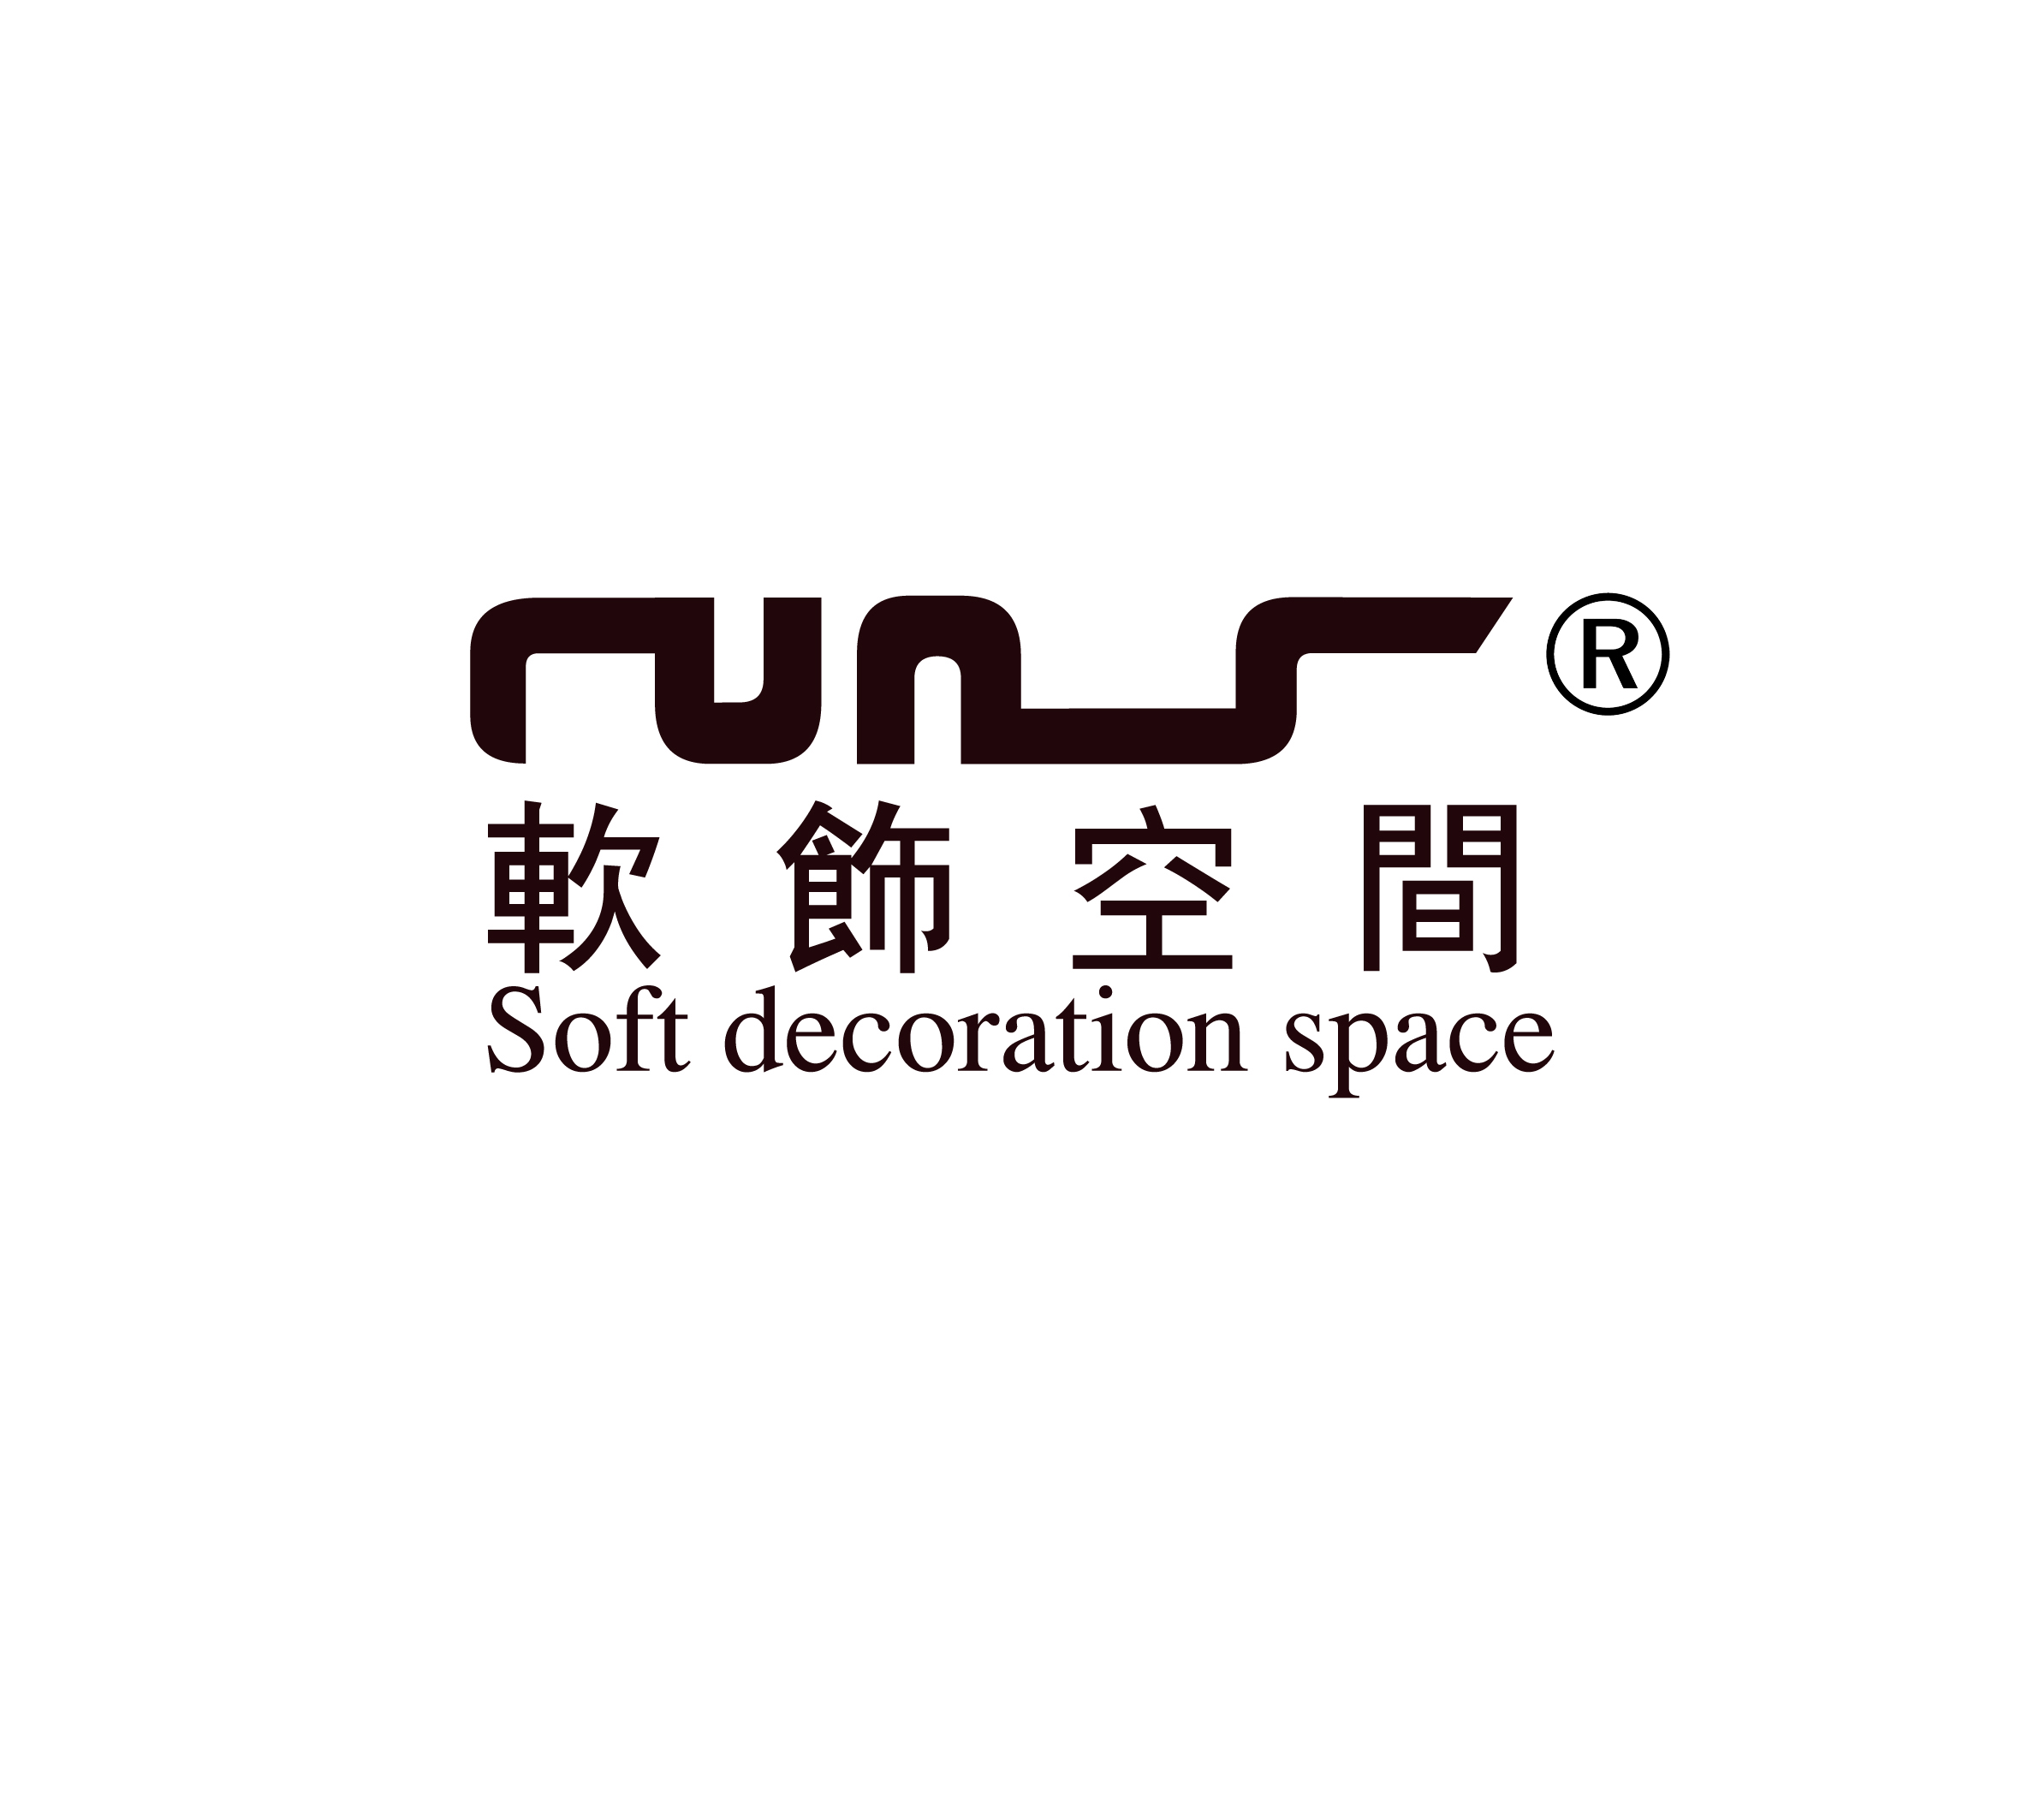 南京軟飾空間文化發展有限公司